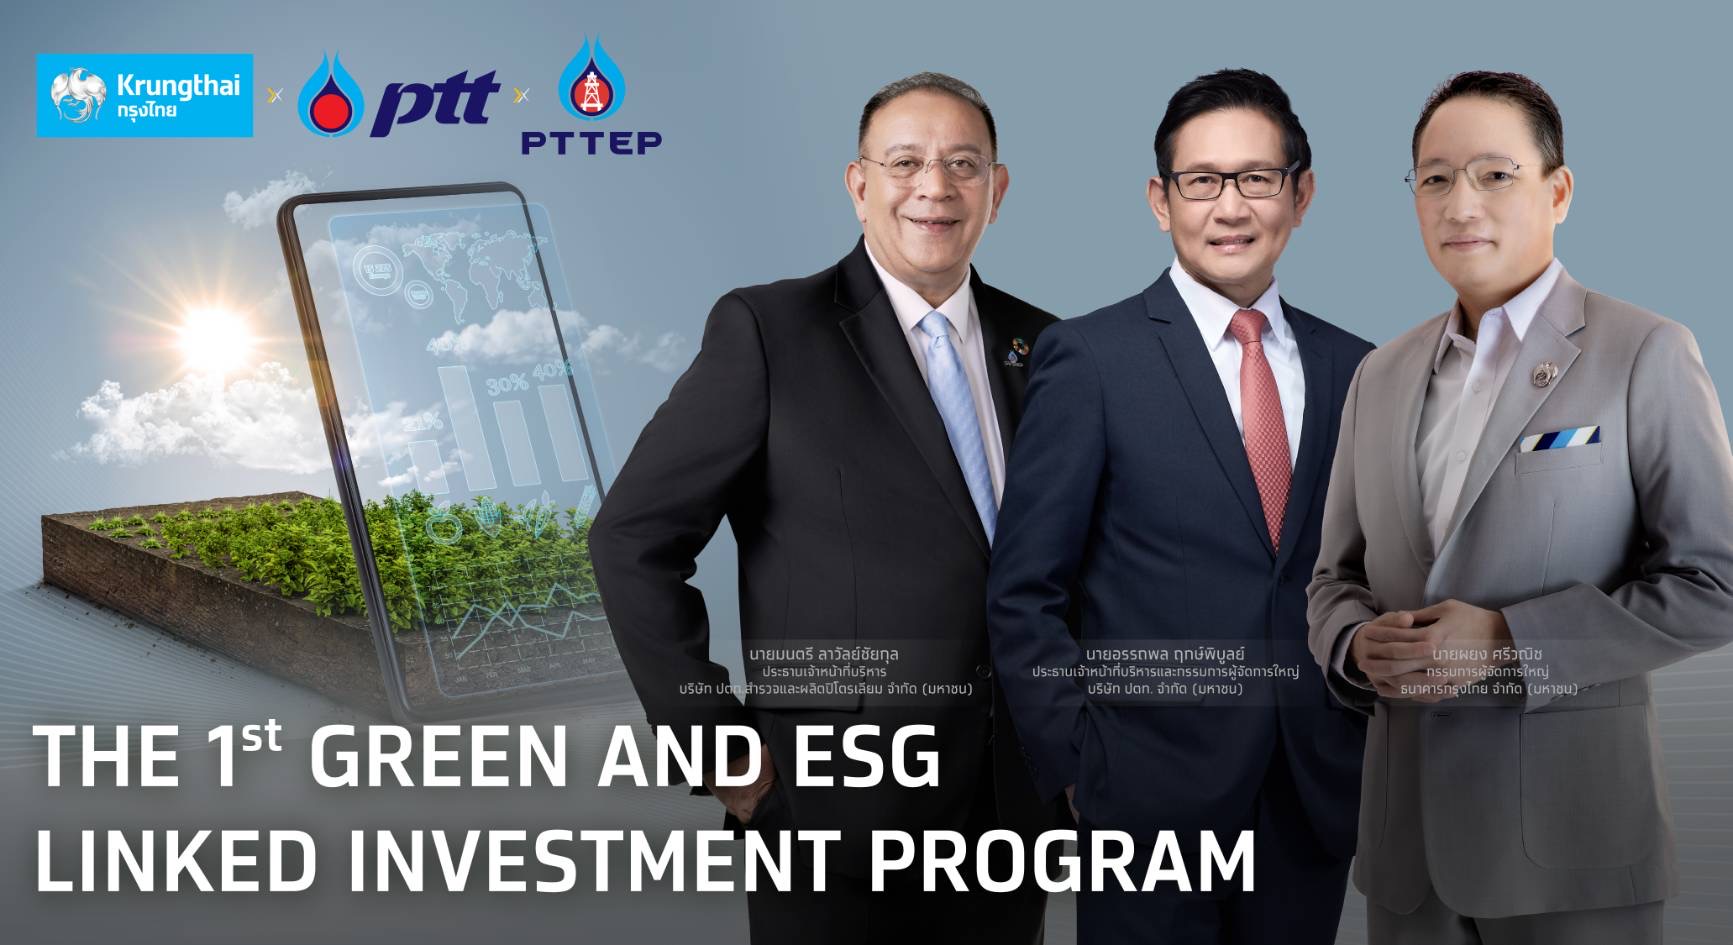 “กรุงไทย” เปิดตัวเงินฝากสีเขียวมาตรฐานสากล นำร่องโครงการบริหารสภาพคล่องเชื่อมโยงเป้าหมาย ESG กับ “ปตท. และ ปตท.สผ.” ครั้งแรกในไทย